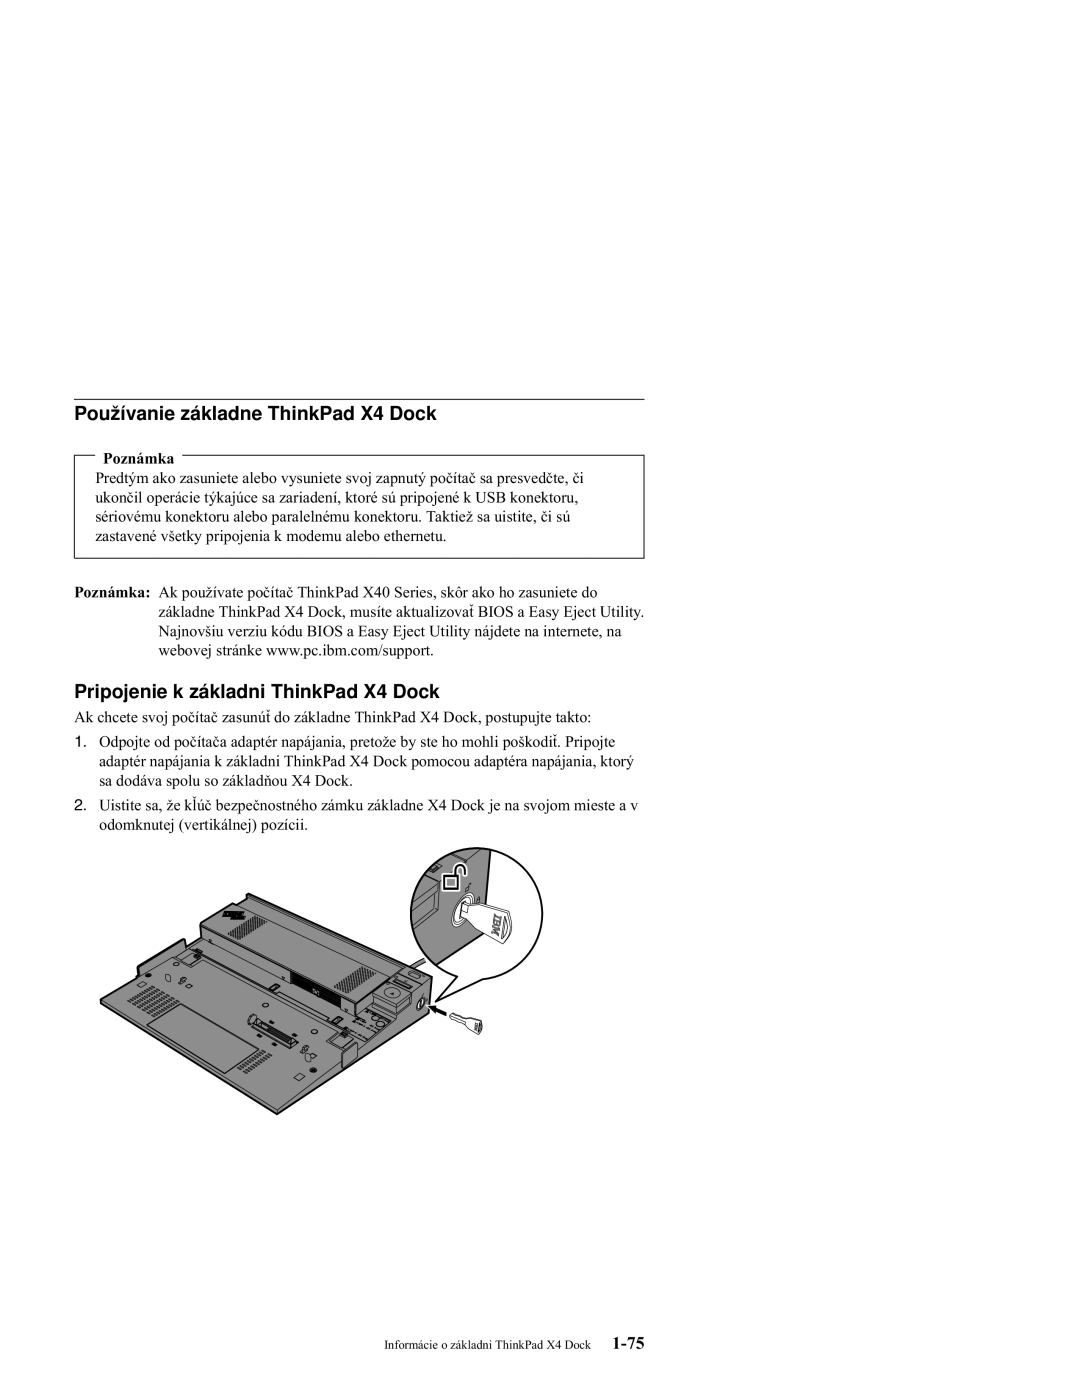 IBM manual Používanie základne ThinkPad X4 Dock, Pripojenie k základni ThinkPad X4 Dock, Poznámka 